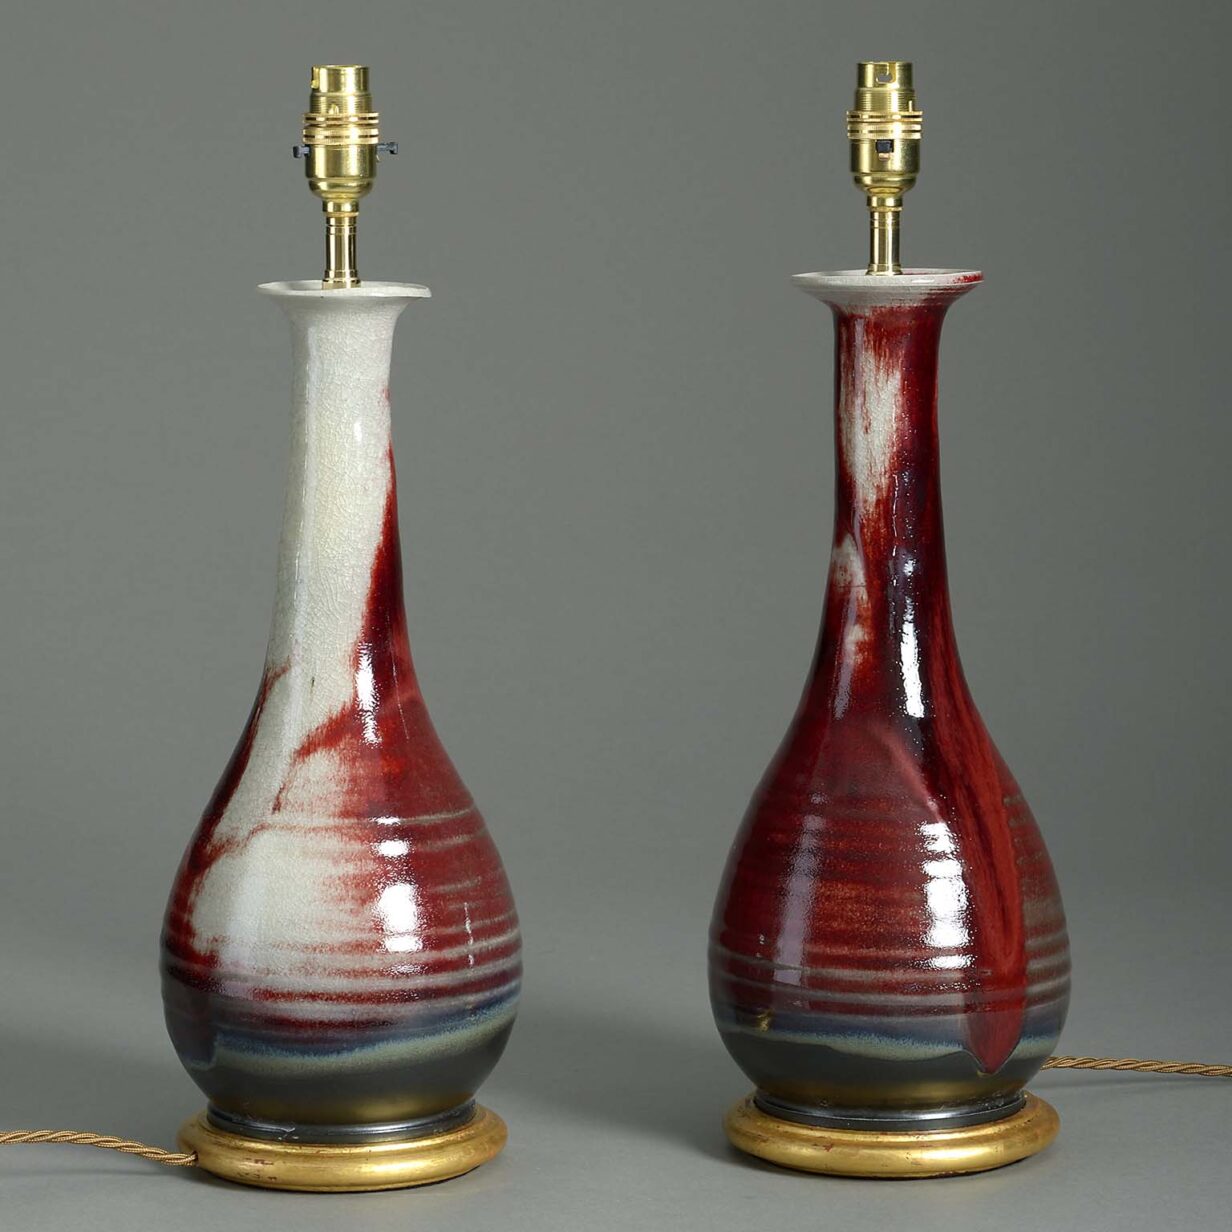 Pair of sang de boeuf vase lamps